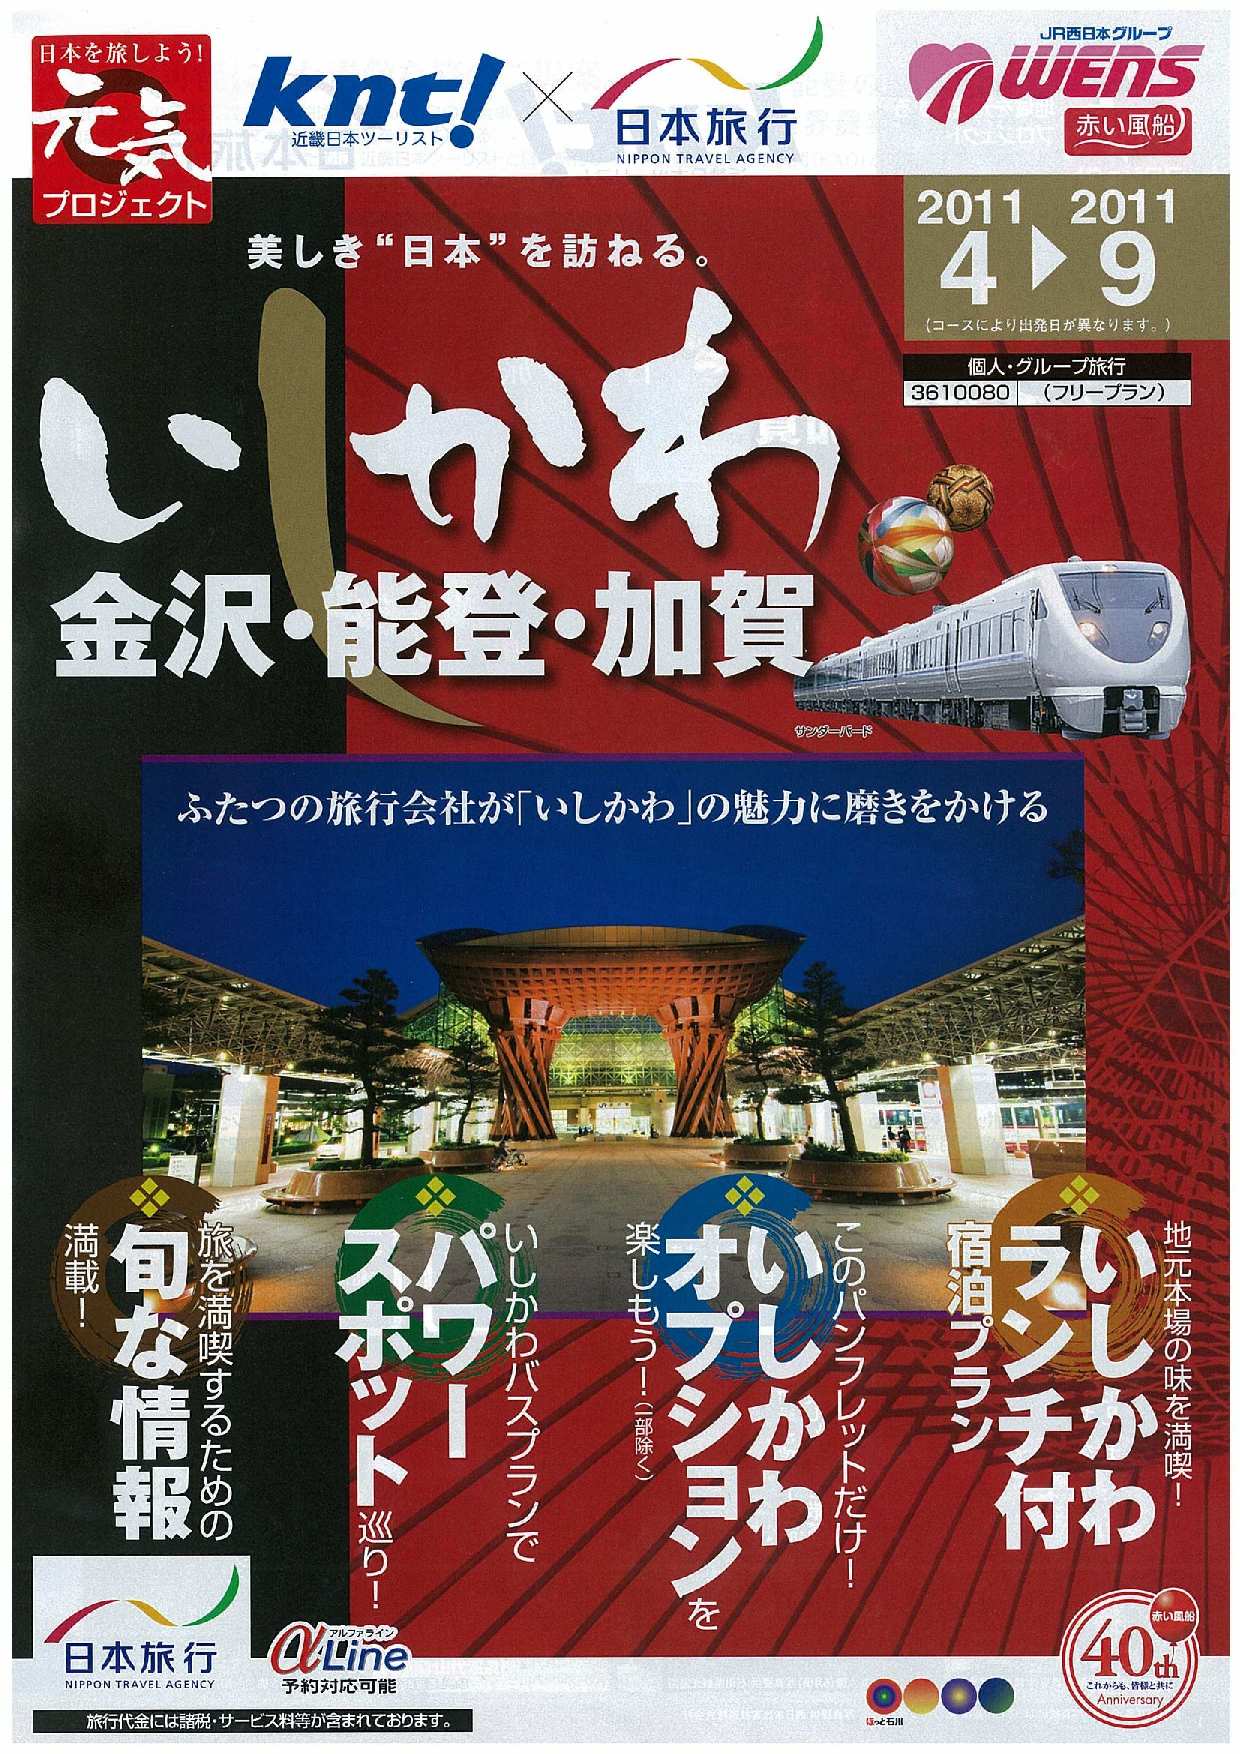 近畿日本ツーリスト・日本旅行 コラボ企画『地域を元気にするプロジェクト』 ｢日本の旅 き・ら・り いしかわ｣の実施について｜ＫＮＴ－ＣＴ  ＨＤのプレスリリース